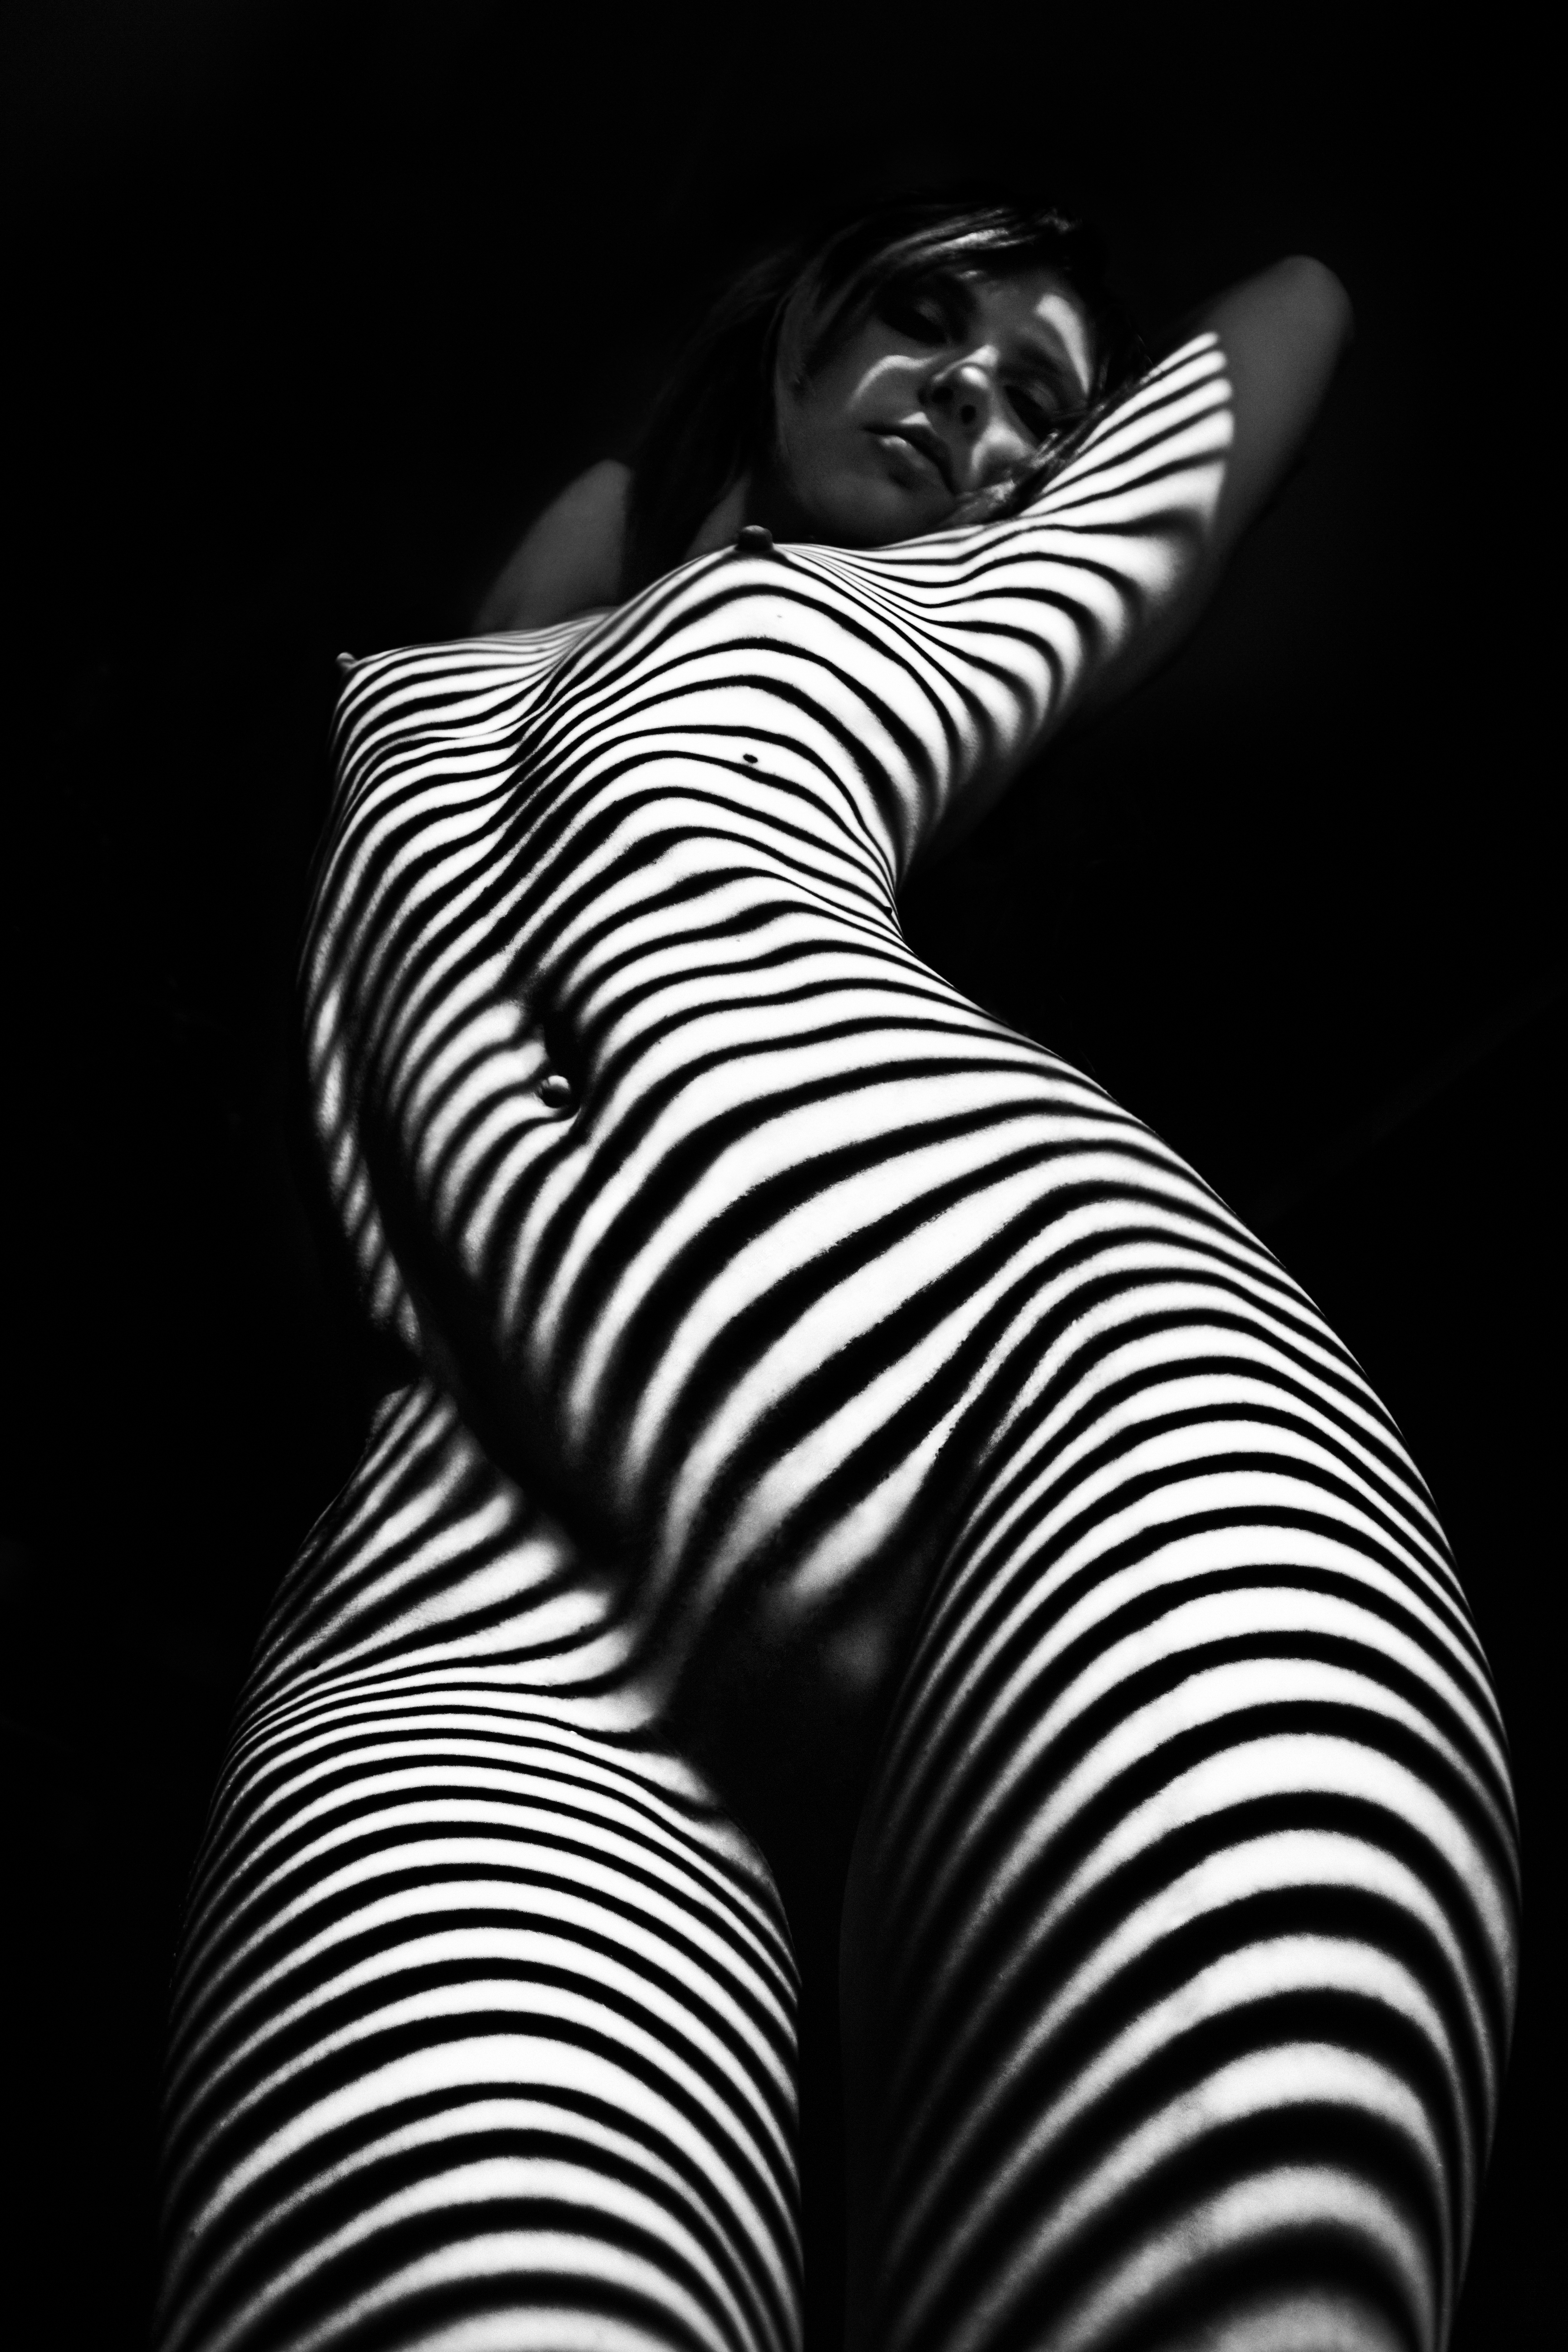 Black & white erotic